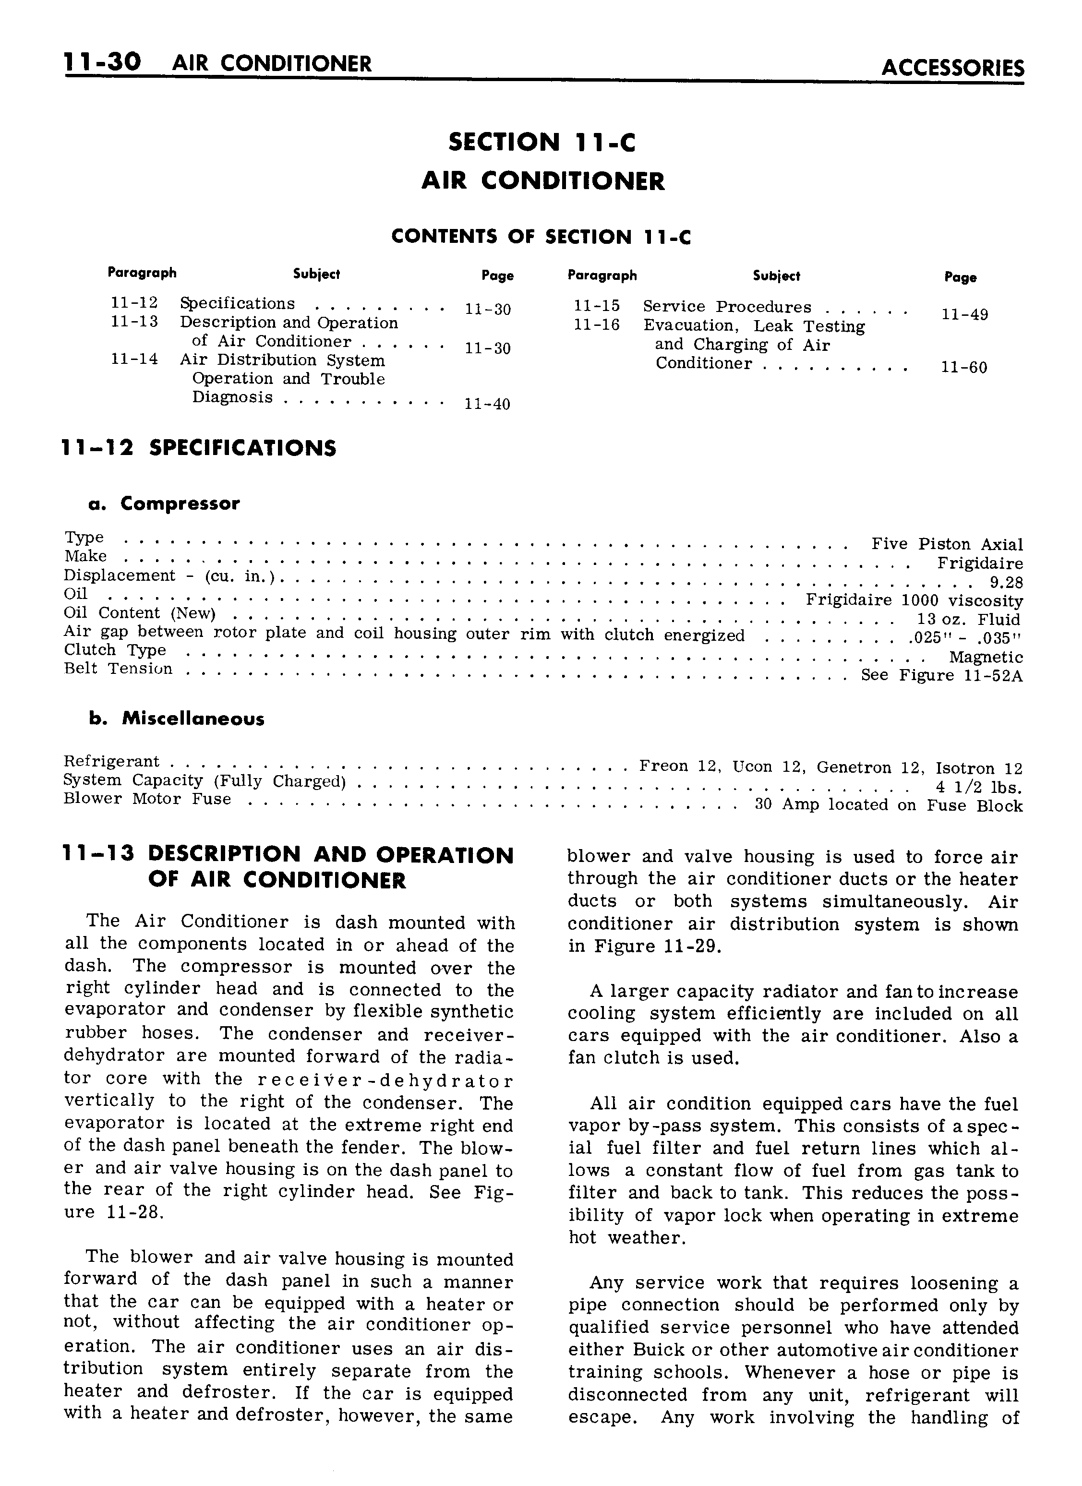 n_11 1961 Buick Shop Manual - Accessories-030-030.jpg